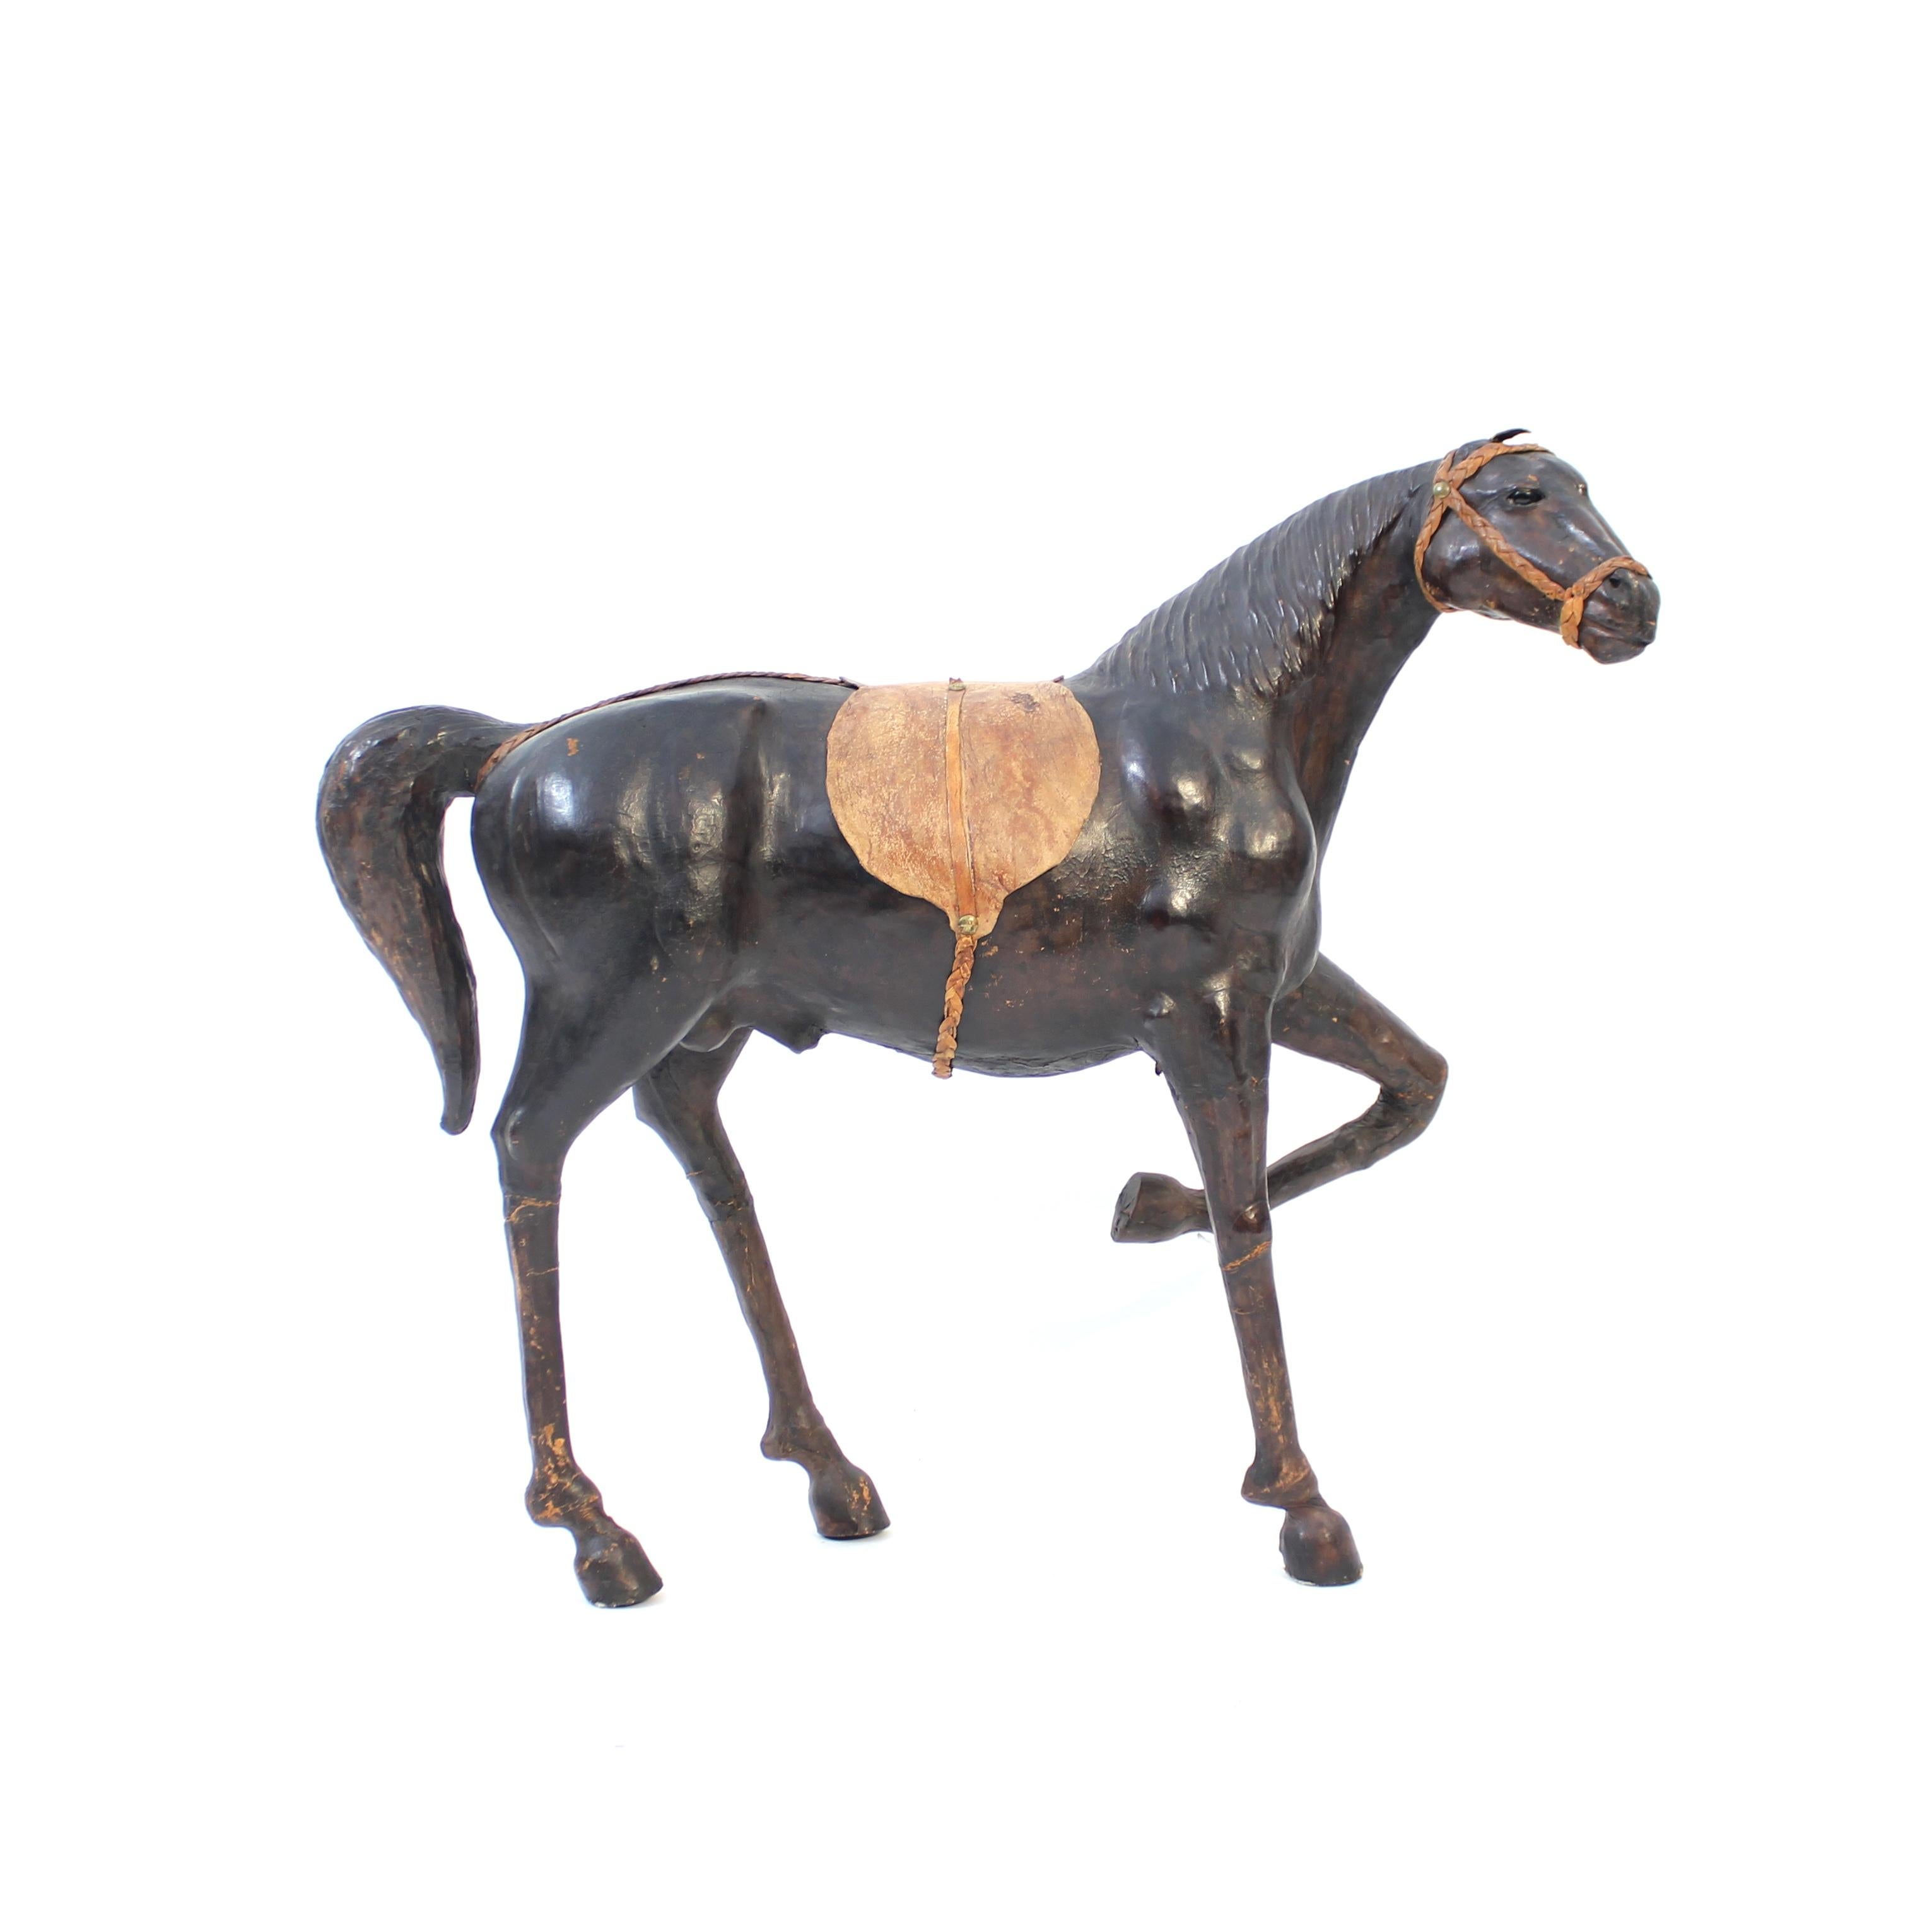 Große und majestätische Pferdeskulptur / Modell aus echtem Leder aus den 1960er oder 1970er Jahren. Gut gemacht mit guten Proportionen und Details. Sehr dekorativ und ein lustiges und cooles Stück für jede Art von Interieur von skandinavisch modern